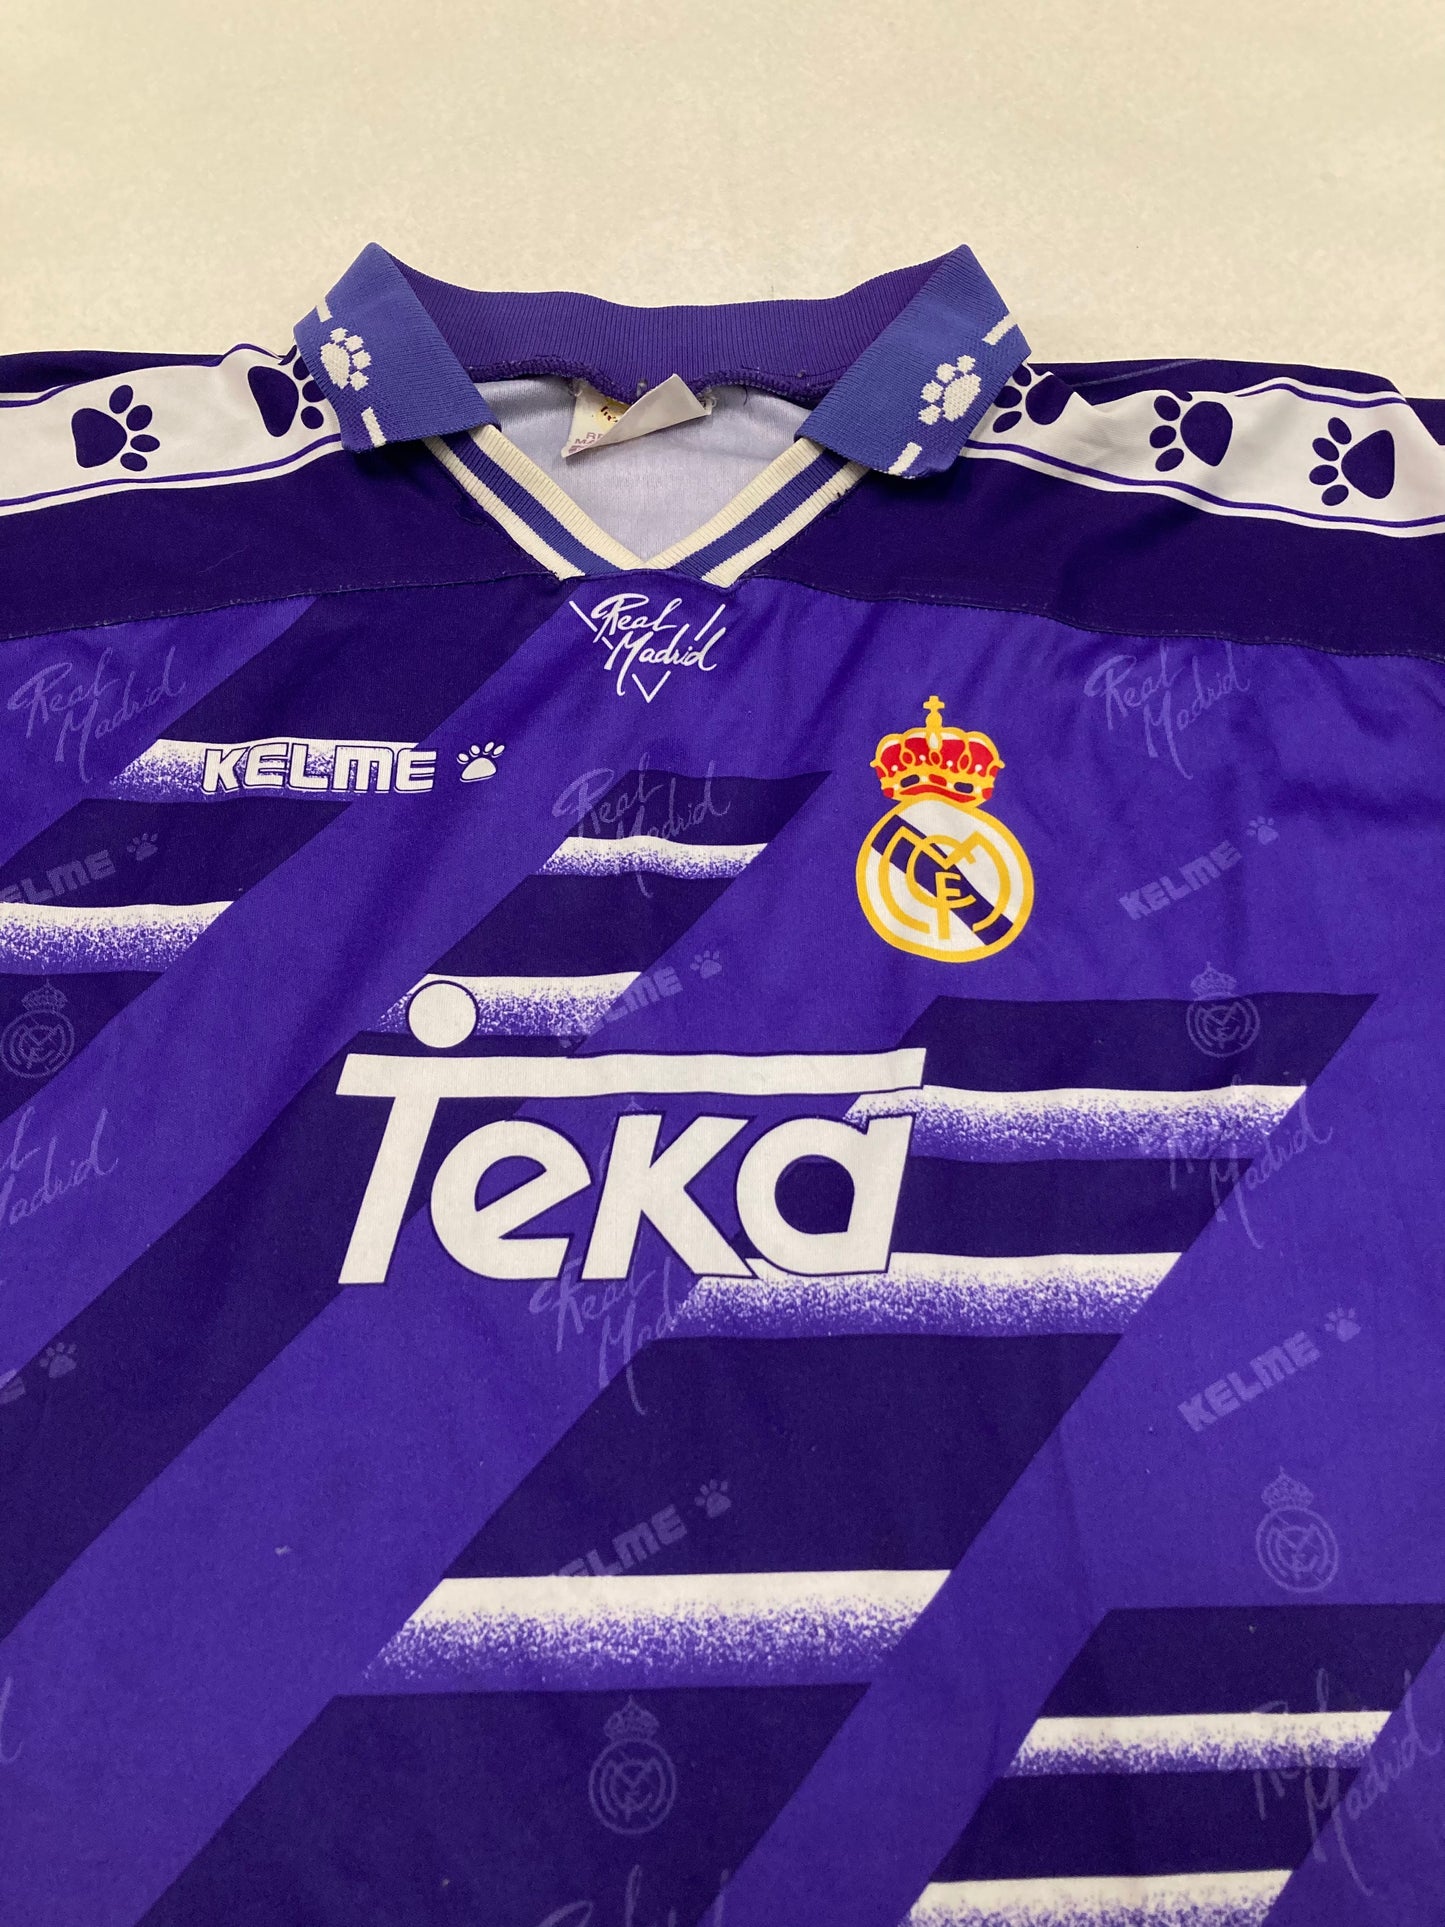 Camiseta Visitante Kelme Real Madrid 1994/1995 Vintage - S